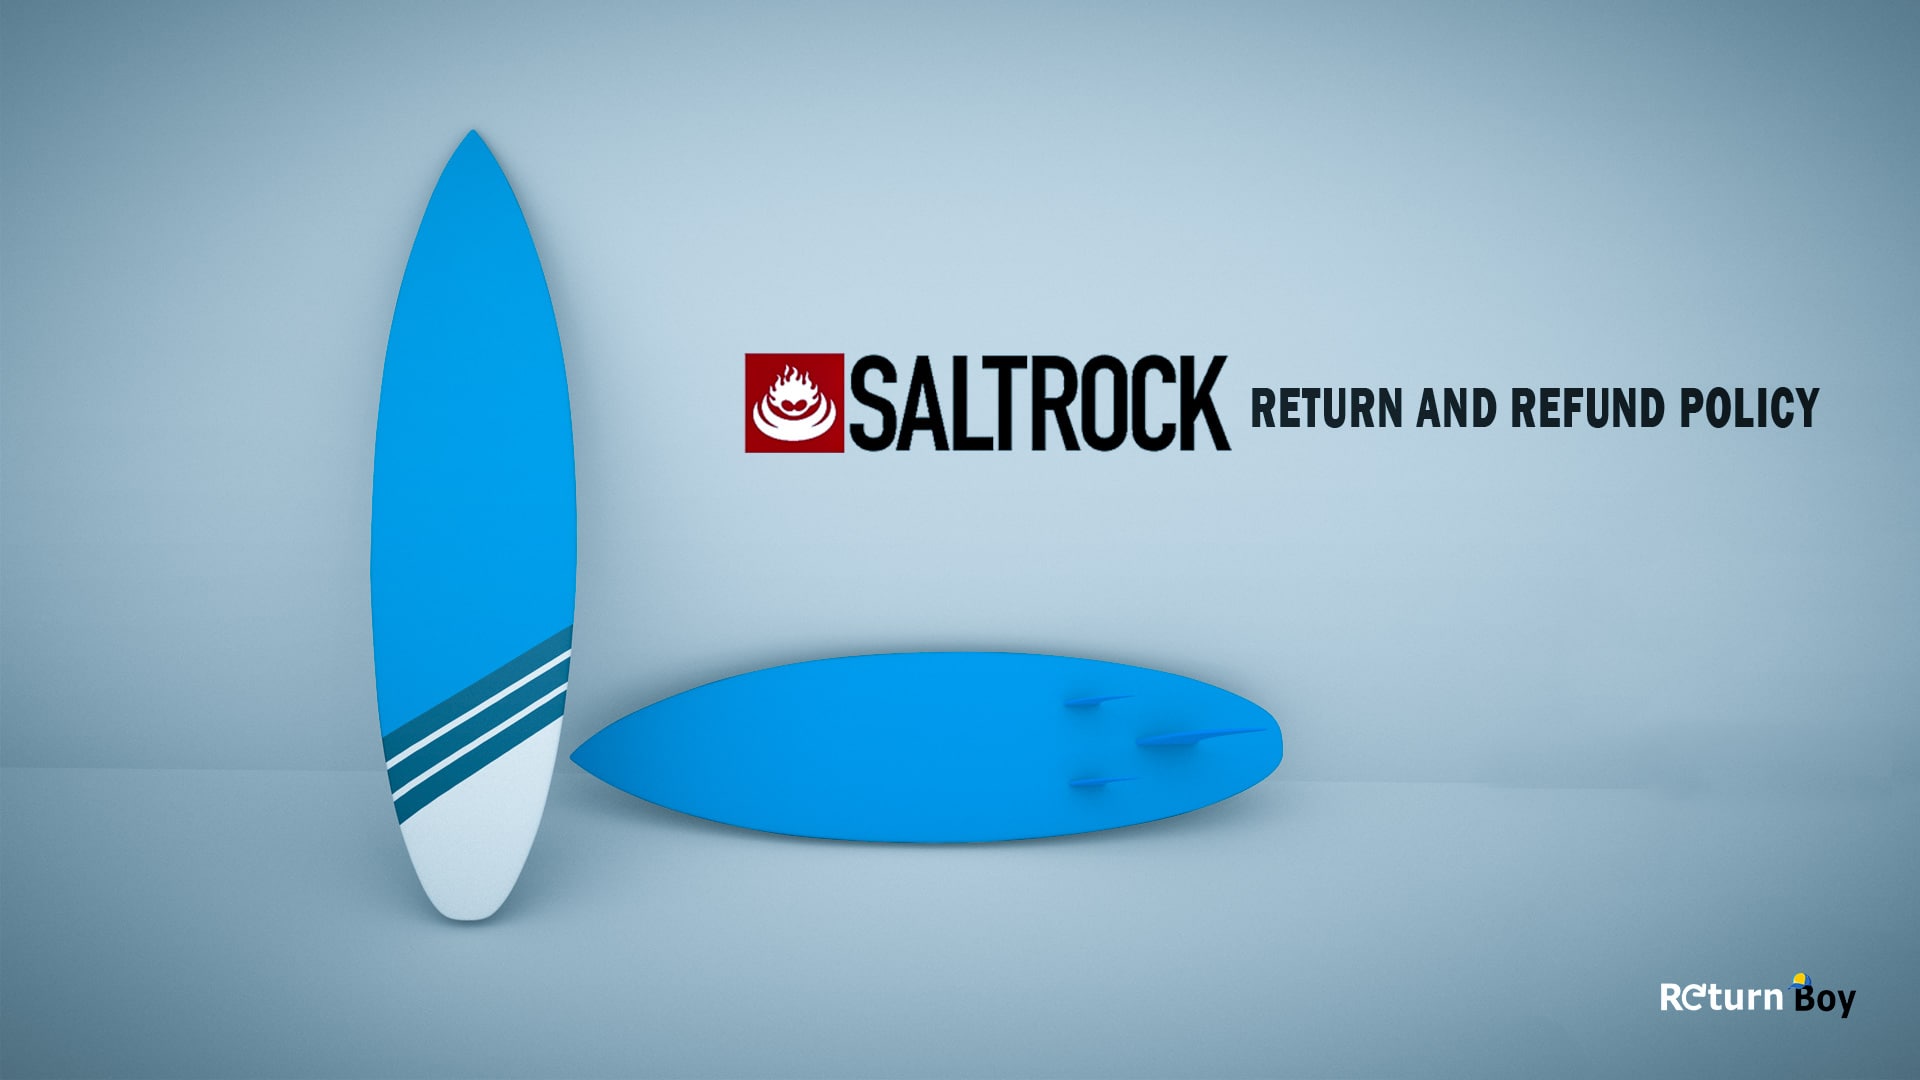 Saltrock Return Policy